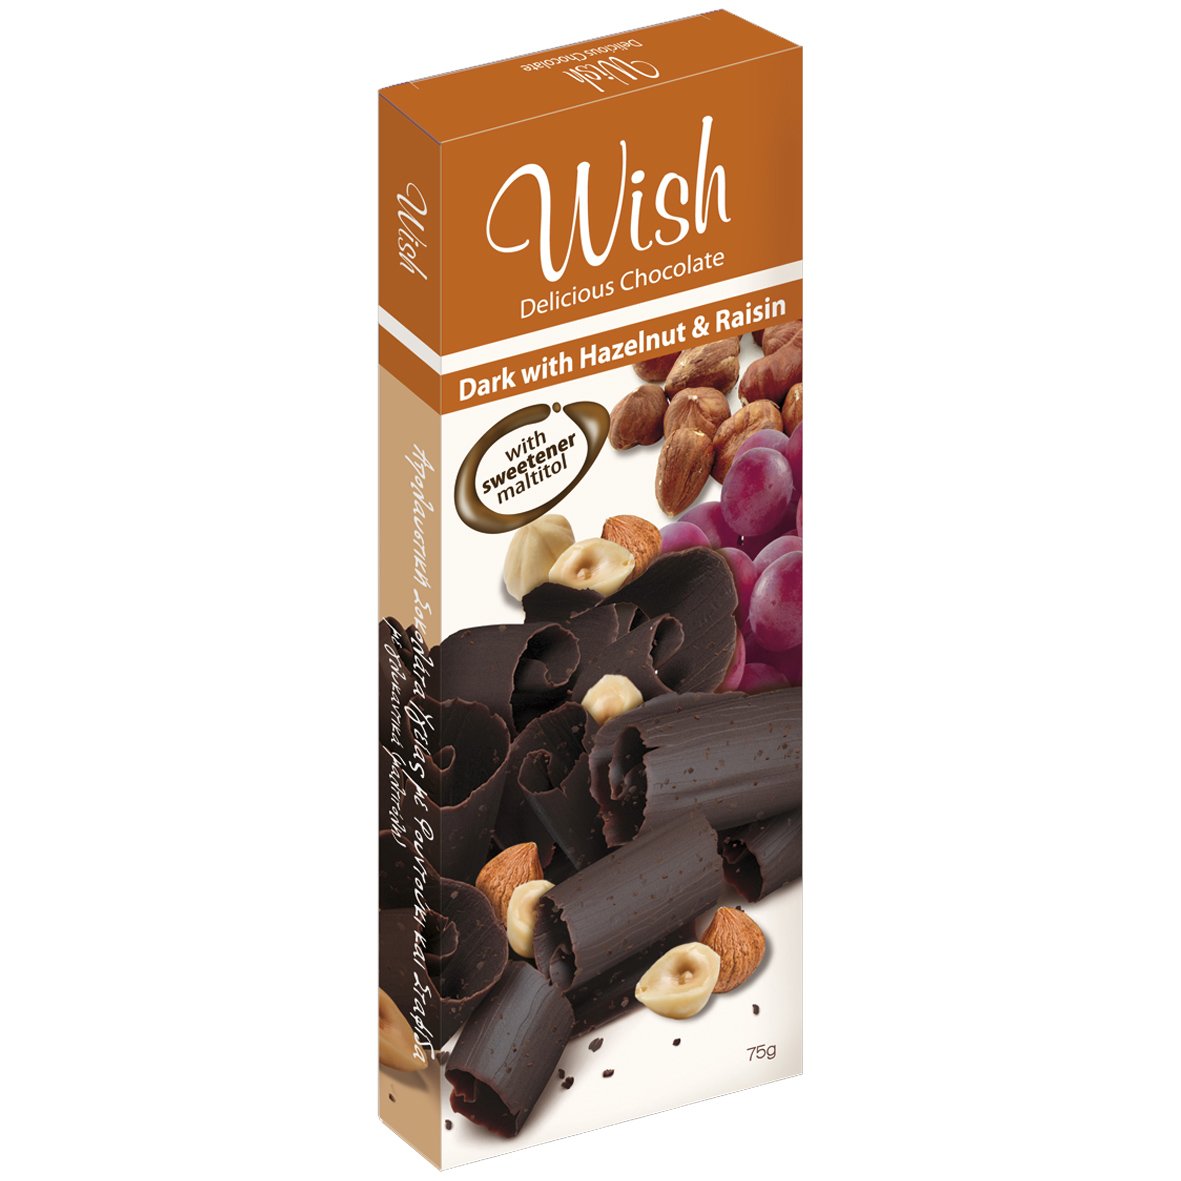 Εικόνα από Wish Delicious Dark Chocolate with Hazelnut & Raisin Αυθεντική Σοκολάτα Υγείας με Φουντούκι & Σταφίδες Χωρίς Προσθήκη Ζάχαρης 75g